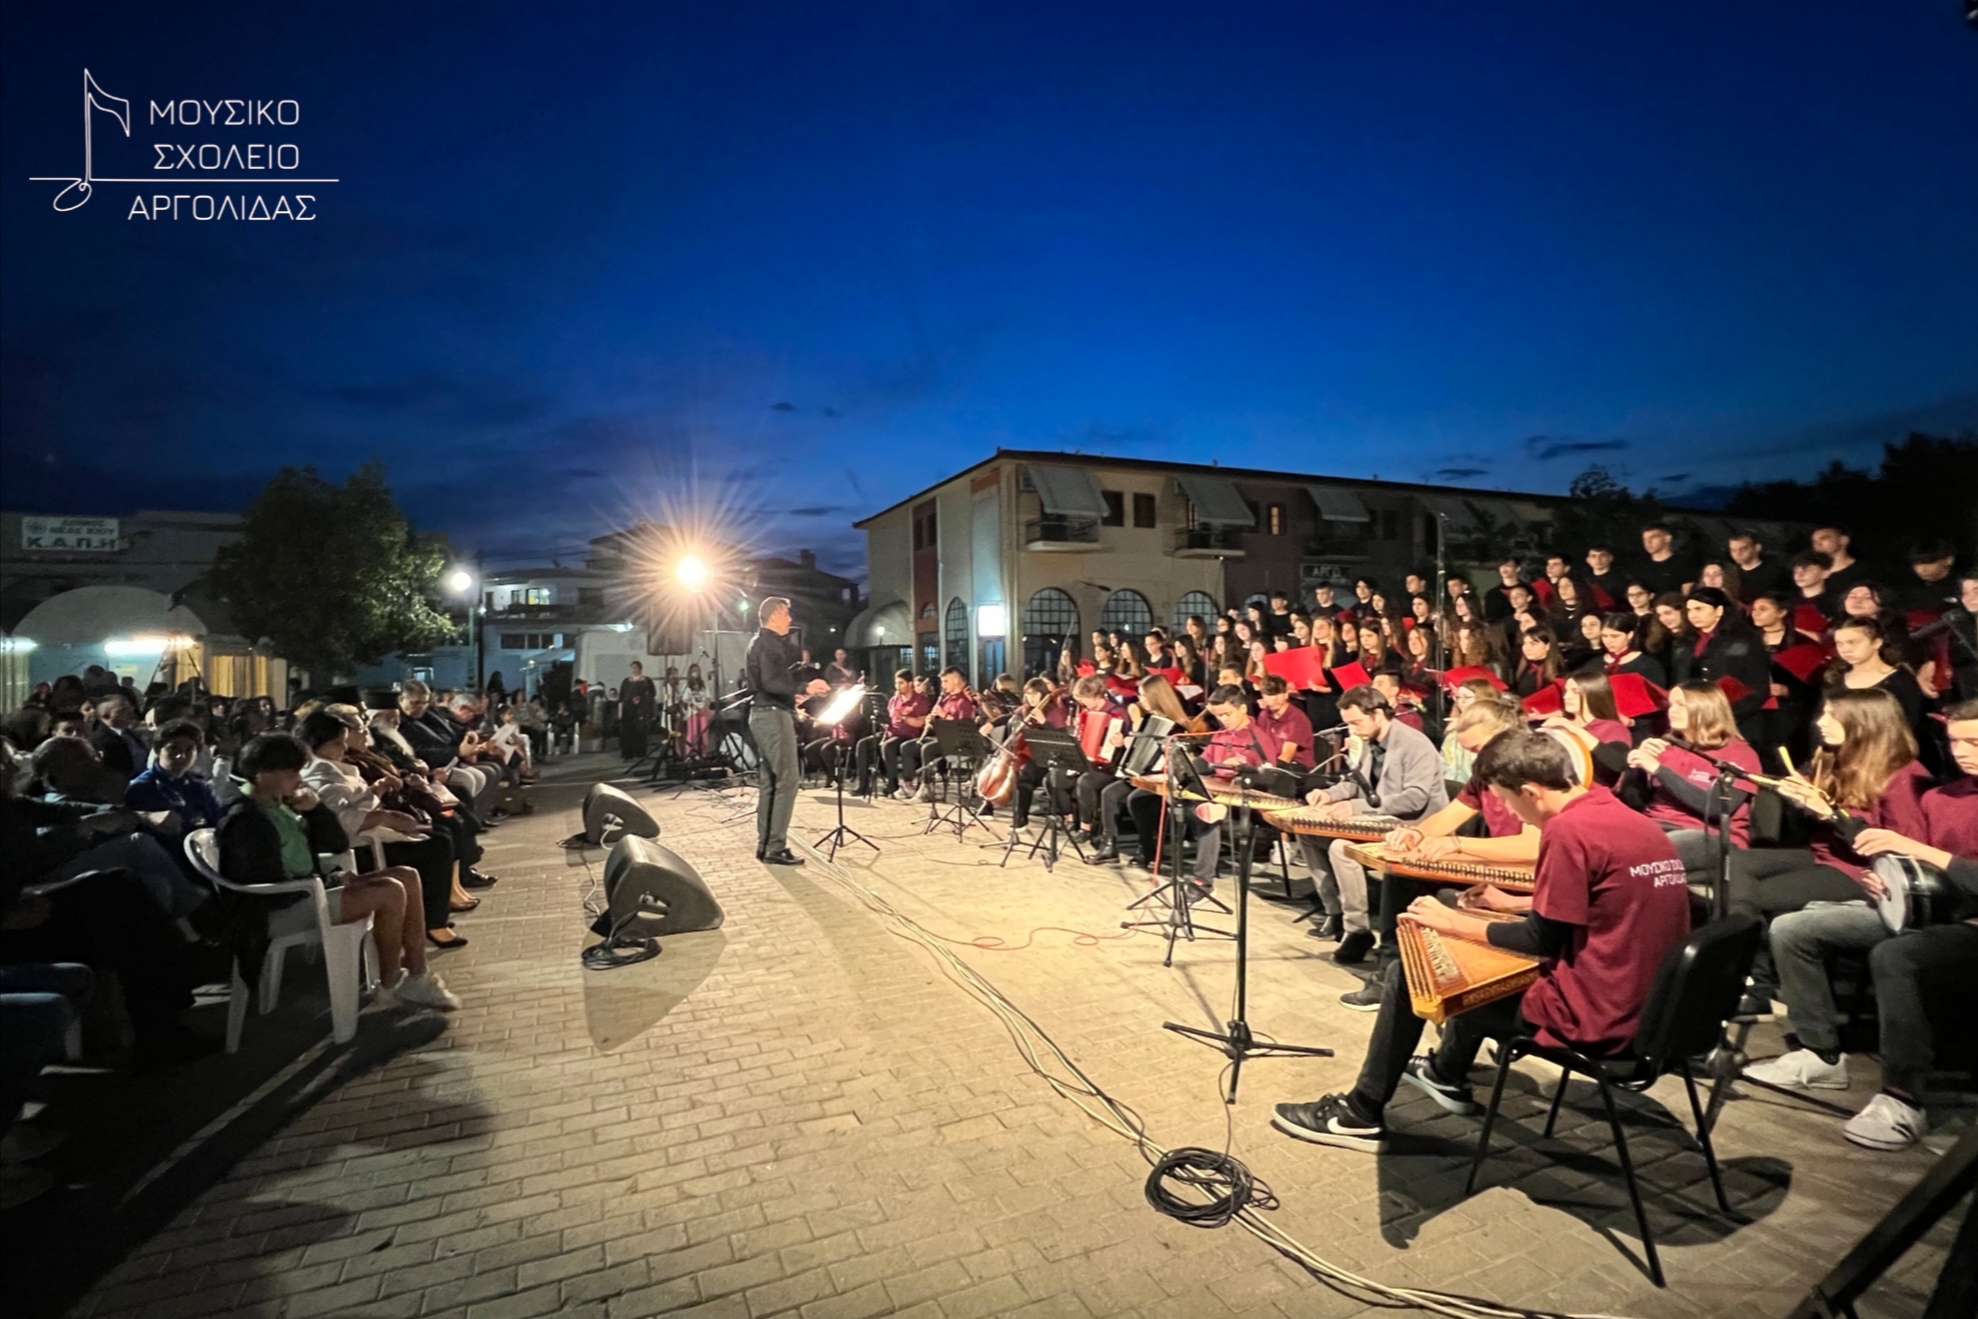 Νέα Κίος: Μουσικές με χρώματα και αρώματα από το Μουσικό Σχολείο Αργολίδας